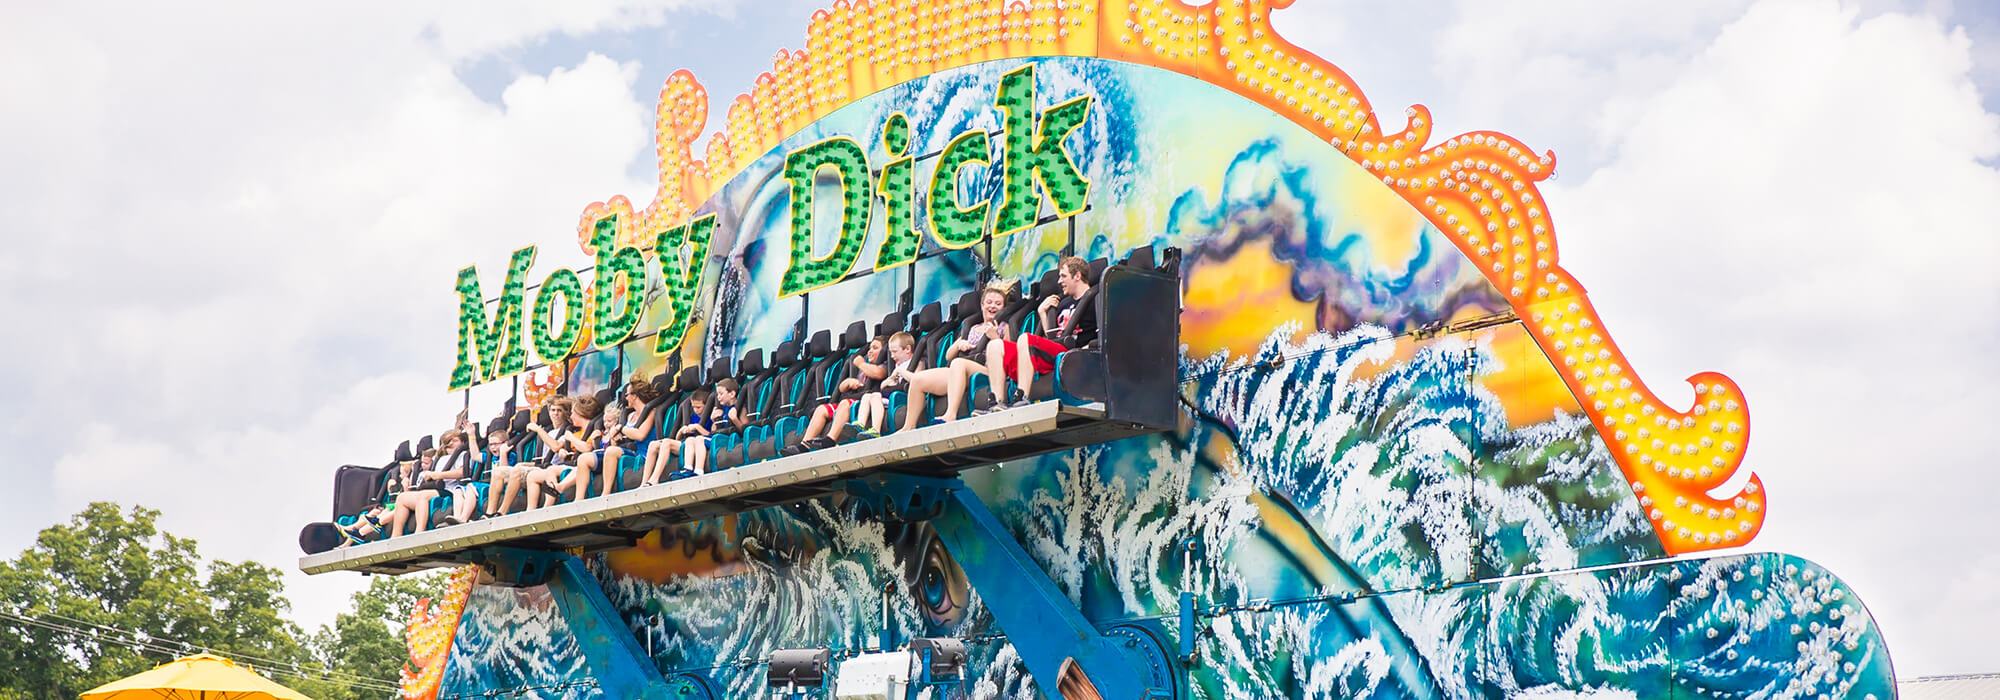 Moby Dick | Beech Bend Amusement Park - Bowling Green, KY